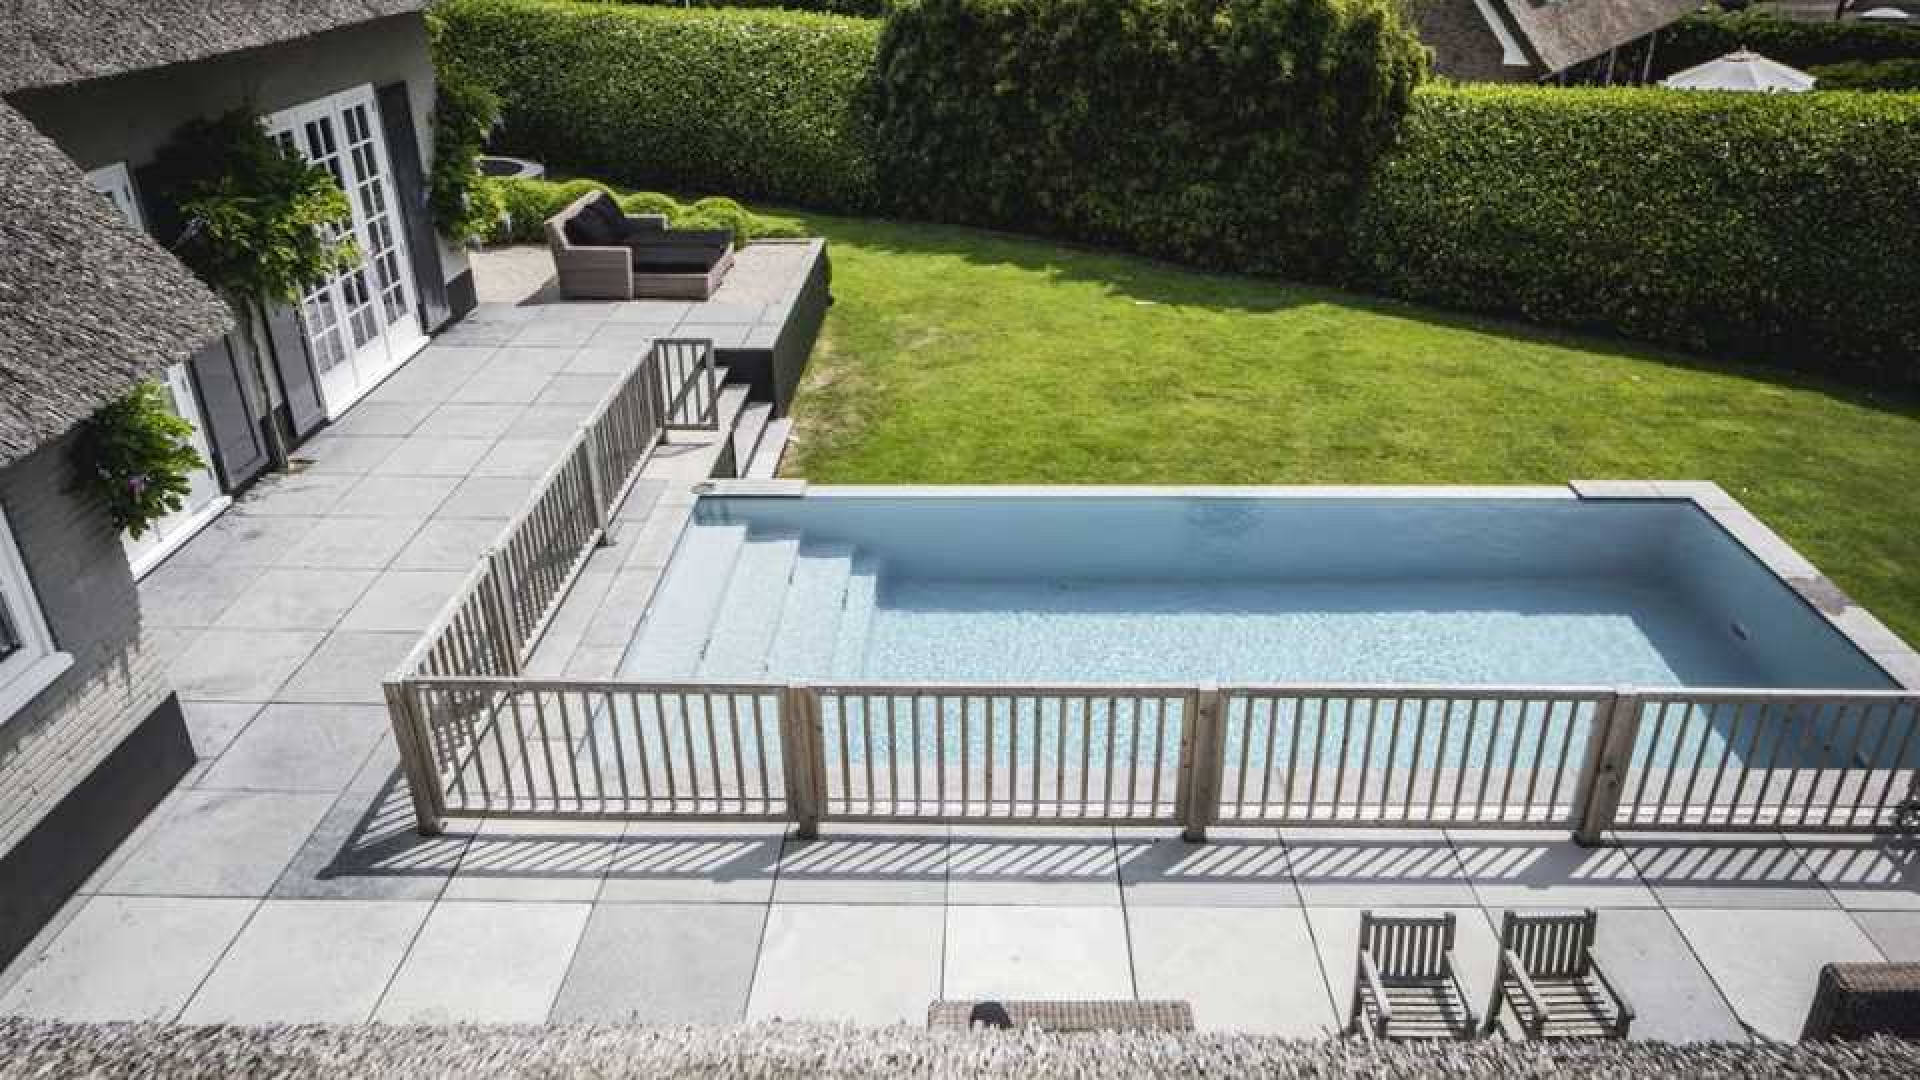 Winston en Renate Gerschtanowitz zetten hun villa met buiten zwembad te koop. Zie foto's 18